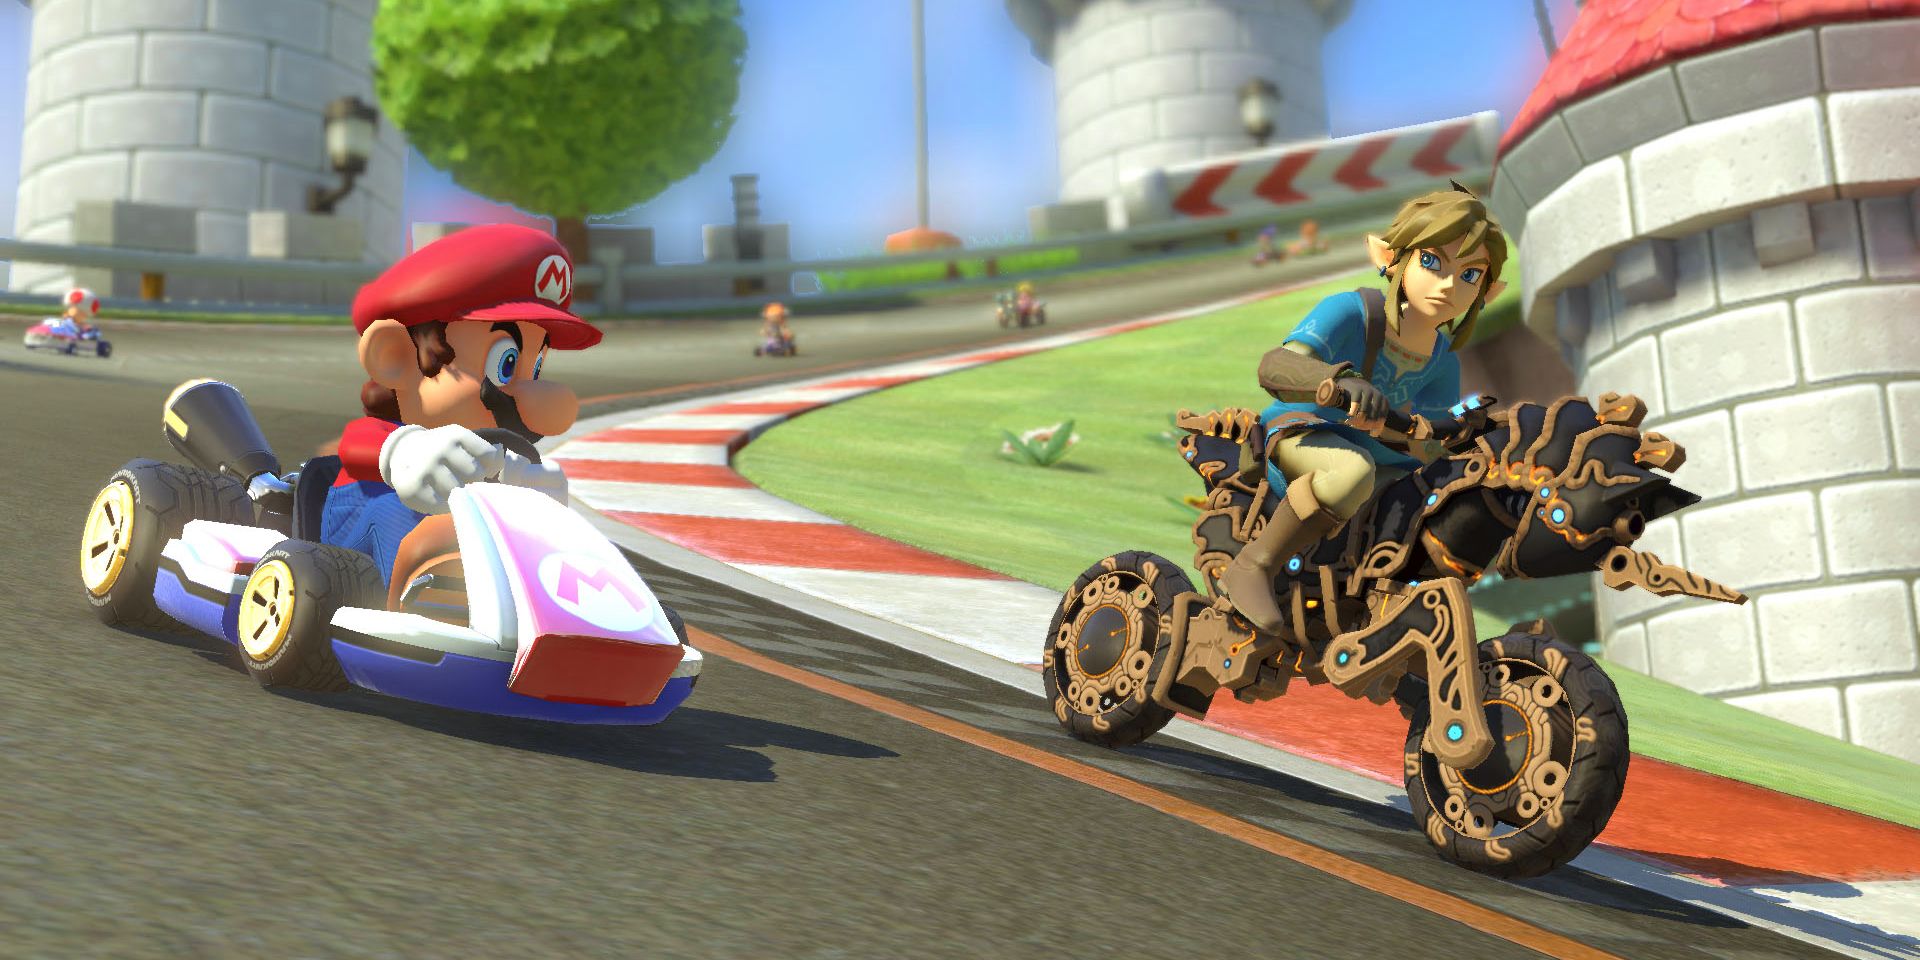 Mario and Link racing in Mario Kart 8 Deluxe